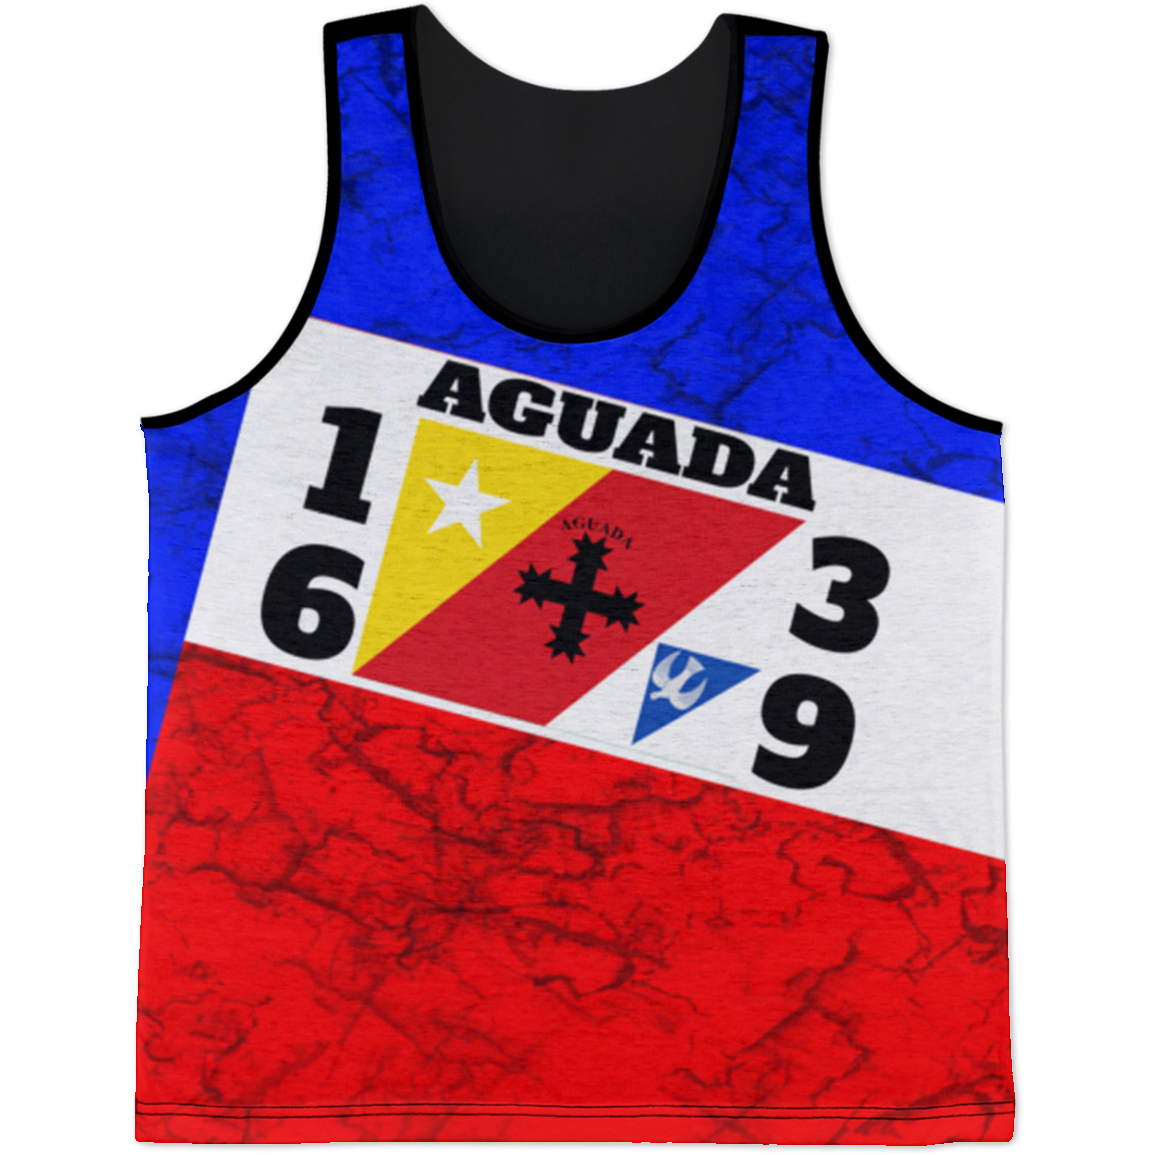 Aguada Tank Top - Puerto Rican Pride